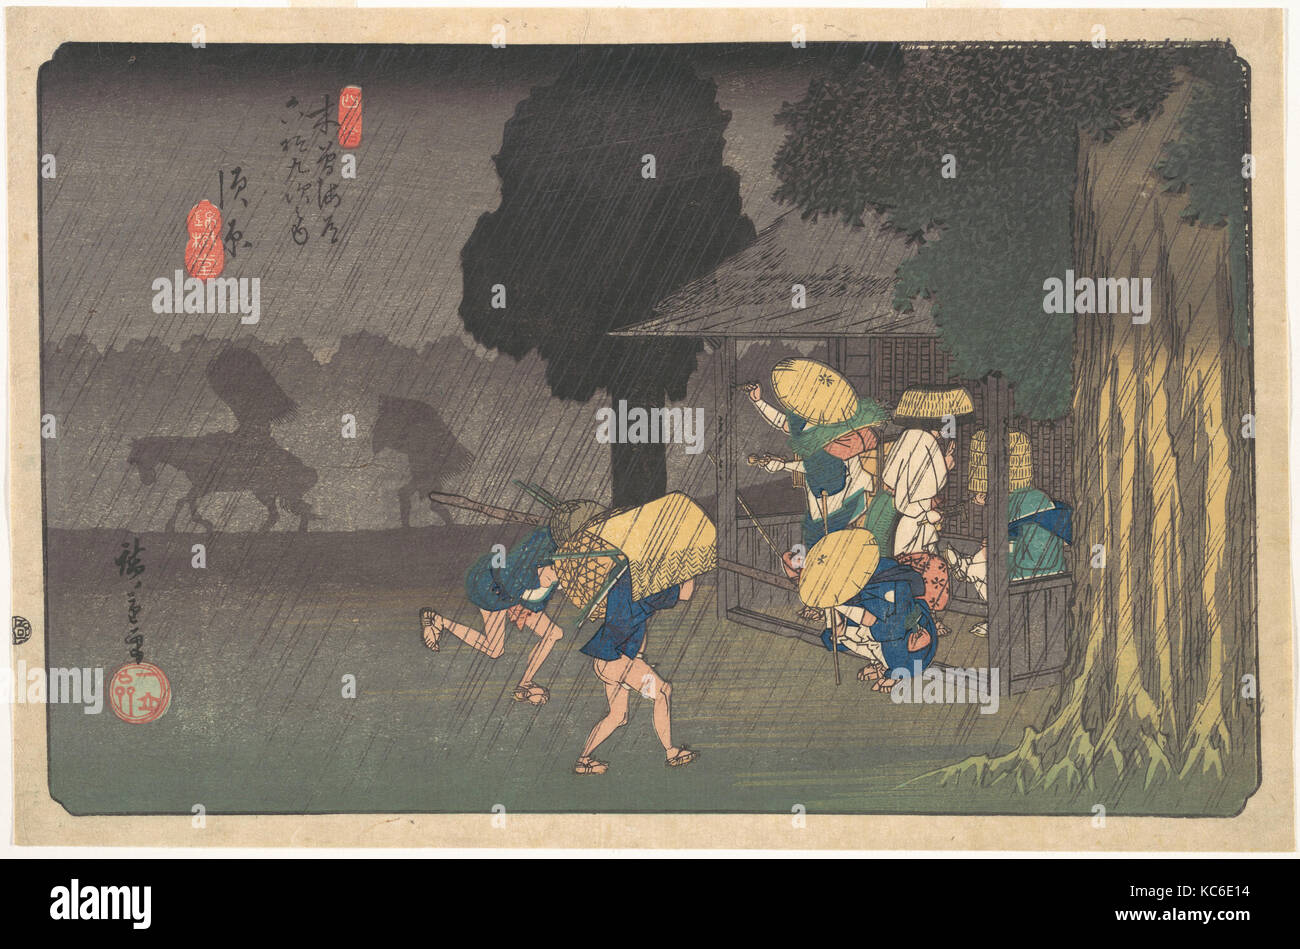 木曽海道六拾九次之内 須原, Suhara, de las sesenta y nueve estaciones del Kisokaidō, Utagawa Hiroshige, ca. 1838 Foto de stock